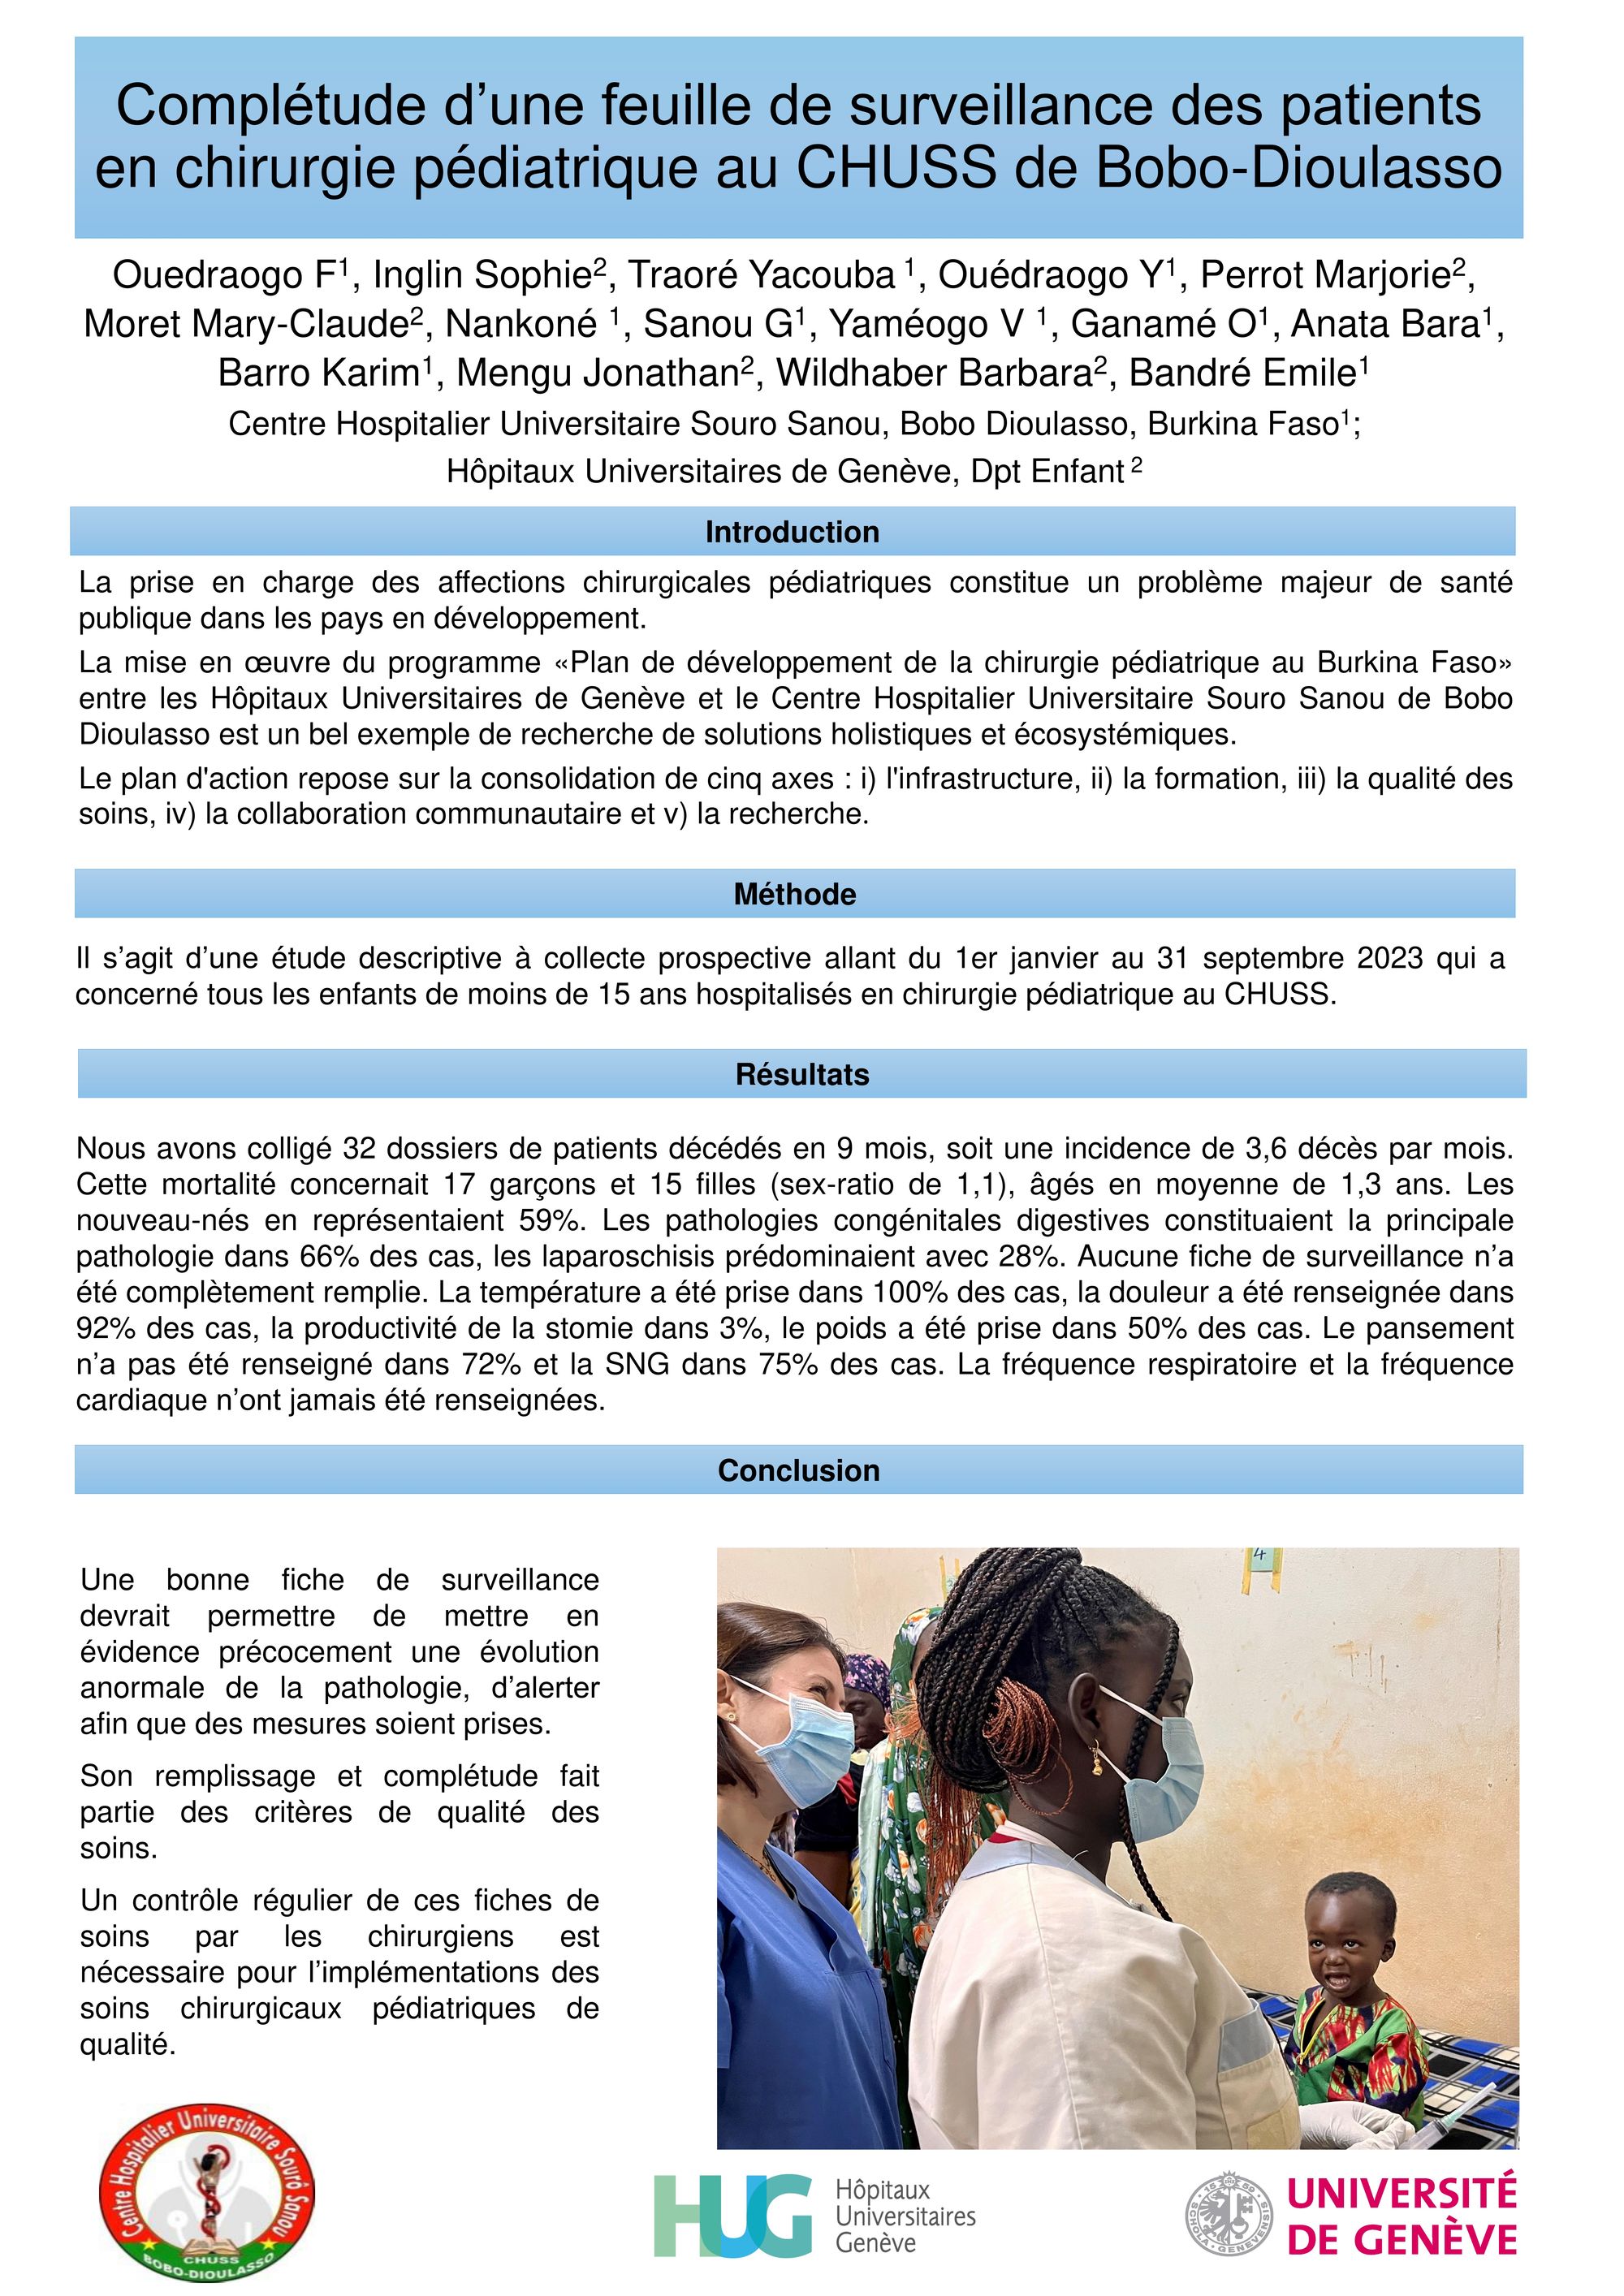 Complétude d’une feuille de surveillance des patients en chirurgie pédiatrique au CHUSS de Bobo-Dioulasso